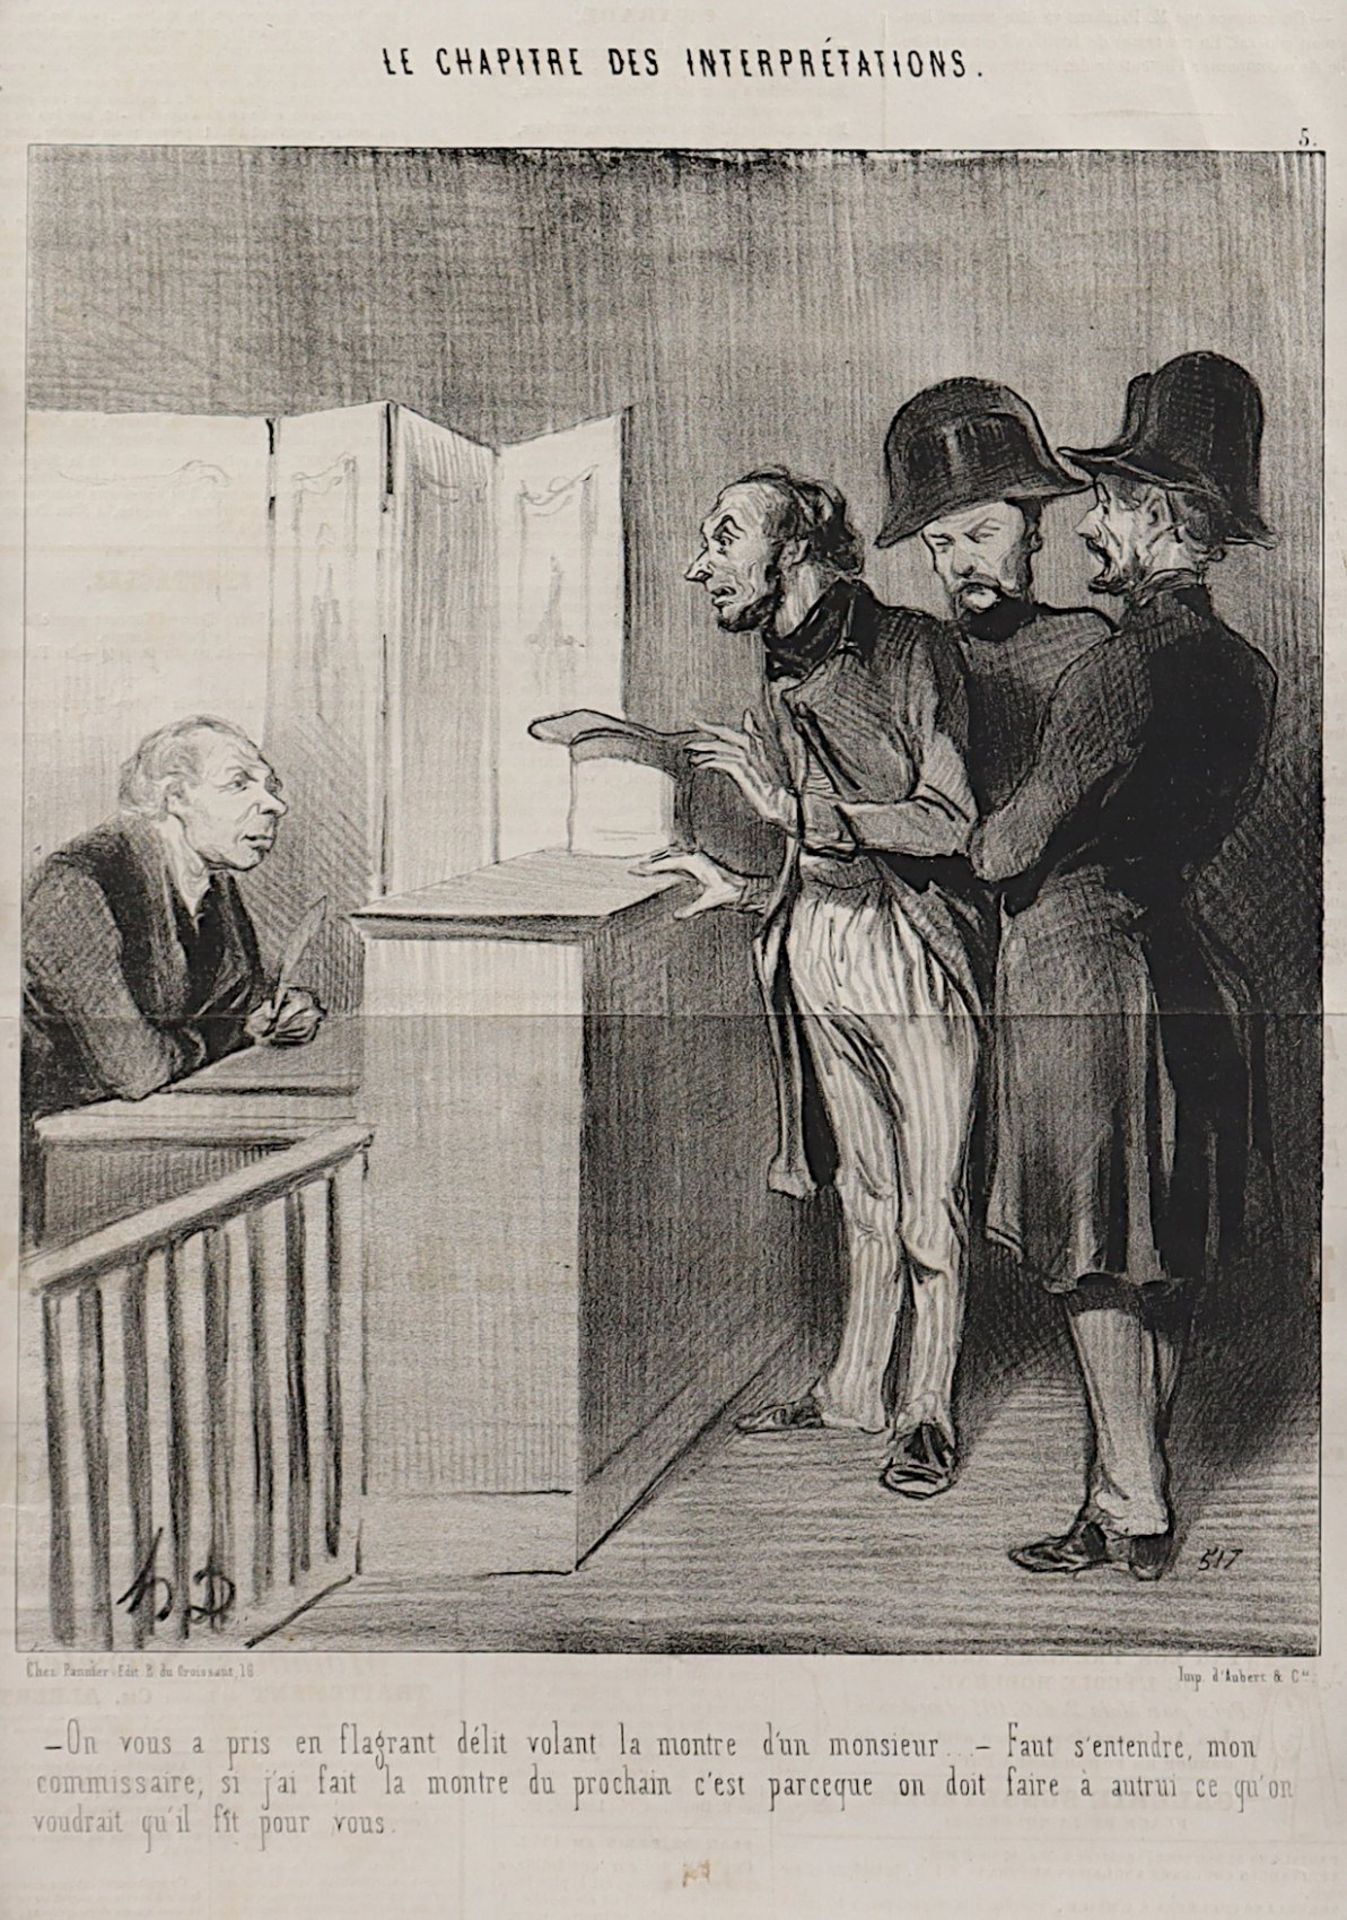 DAUMIER, Honoré, Justizszene, - Image 2 of 2